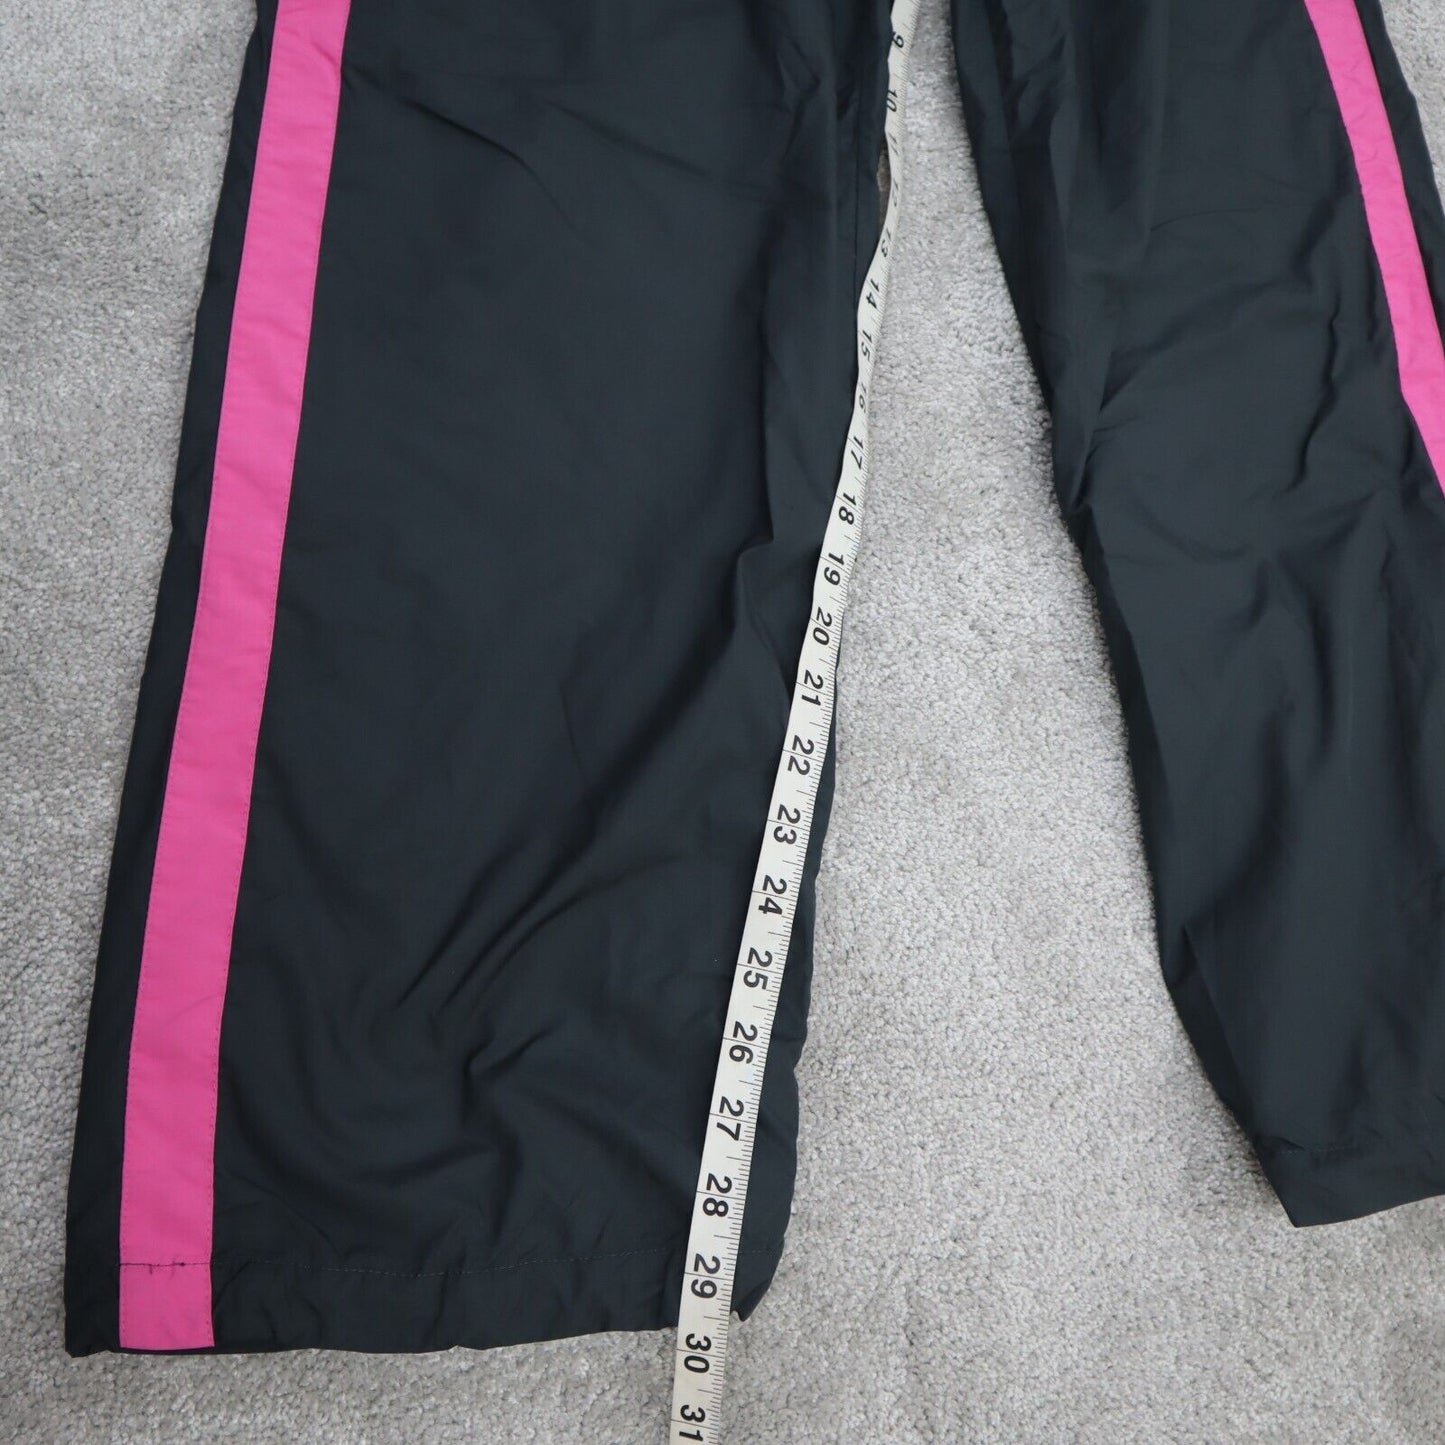 Nike Pant Women Large Black Pink Striped Wide Leg Activewear Pant Elastic Waist